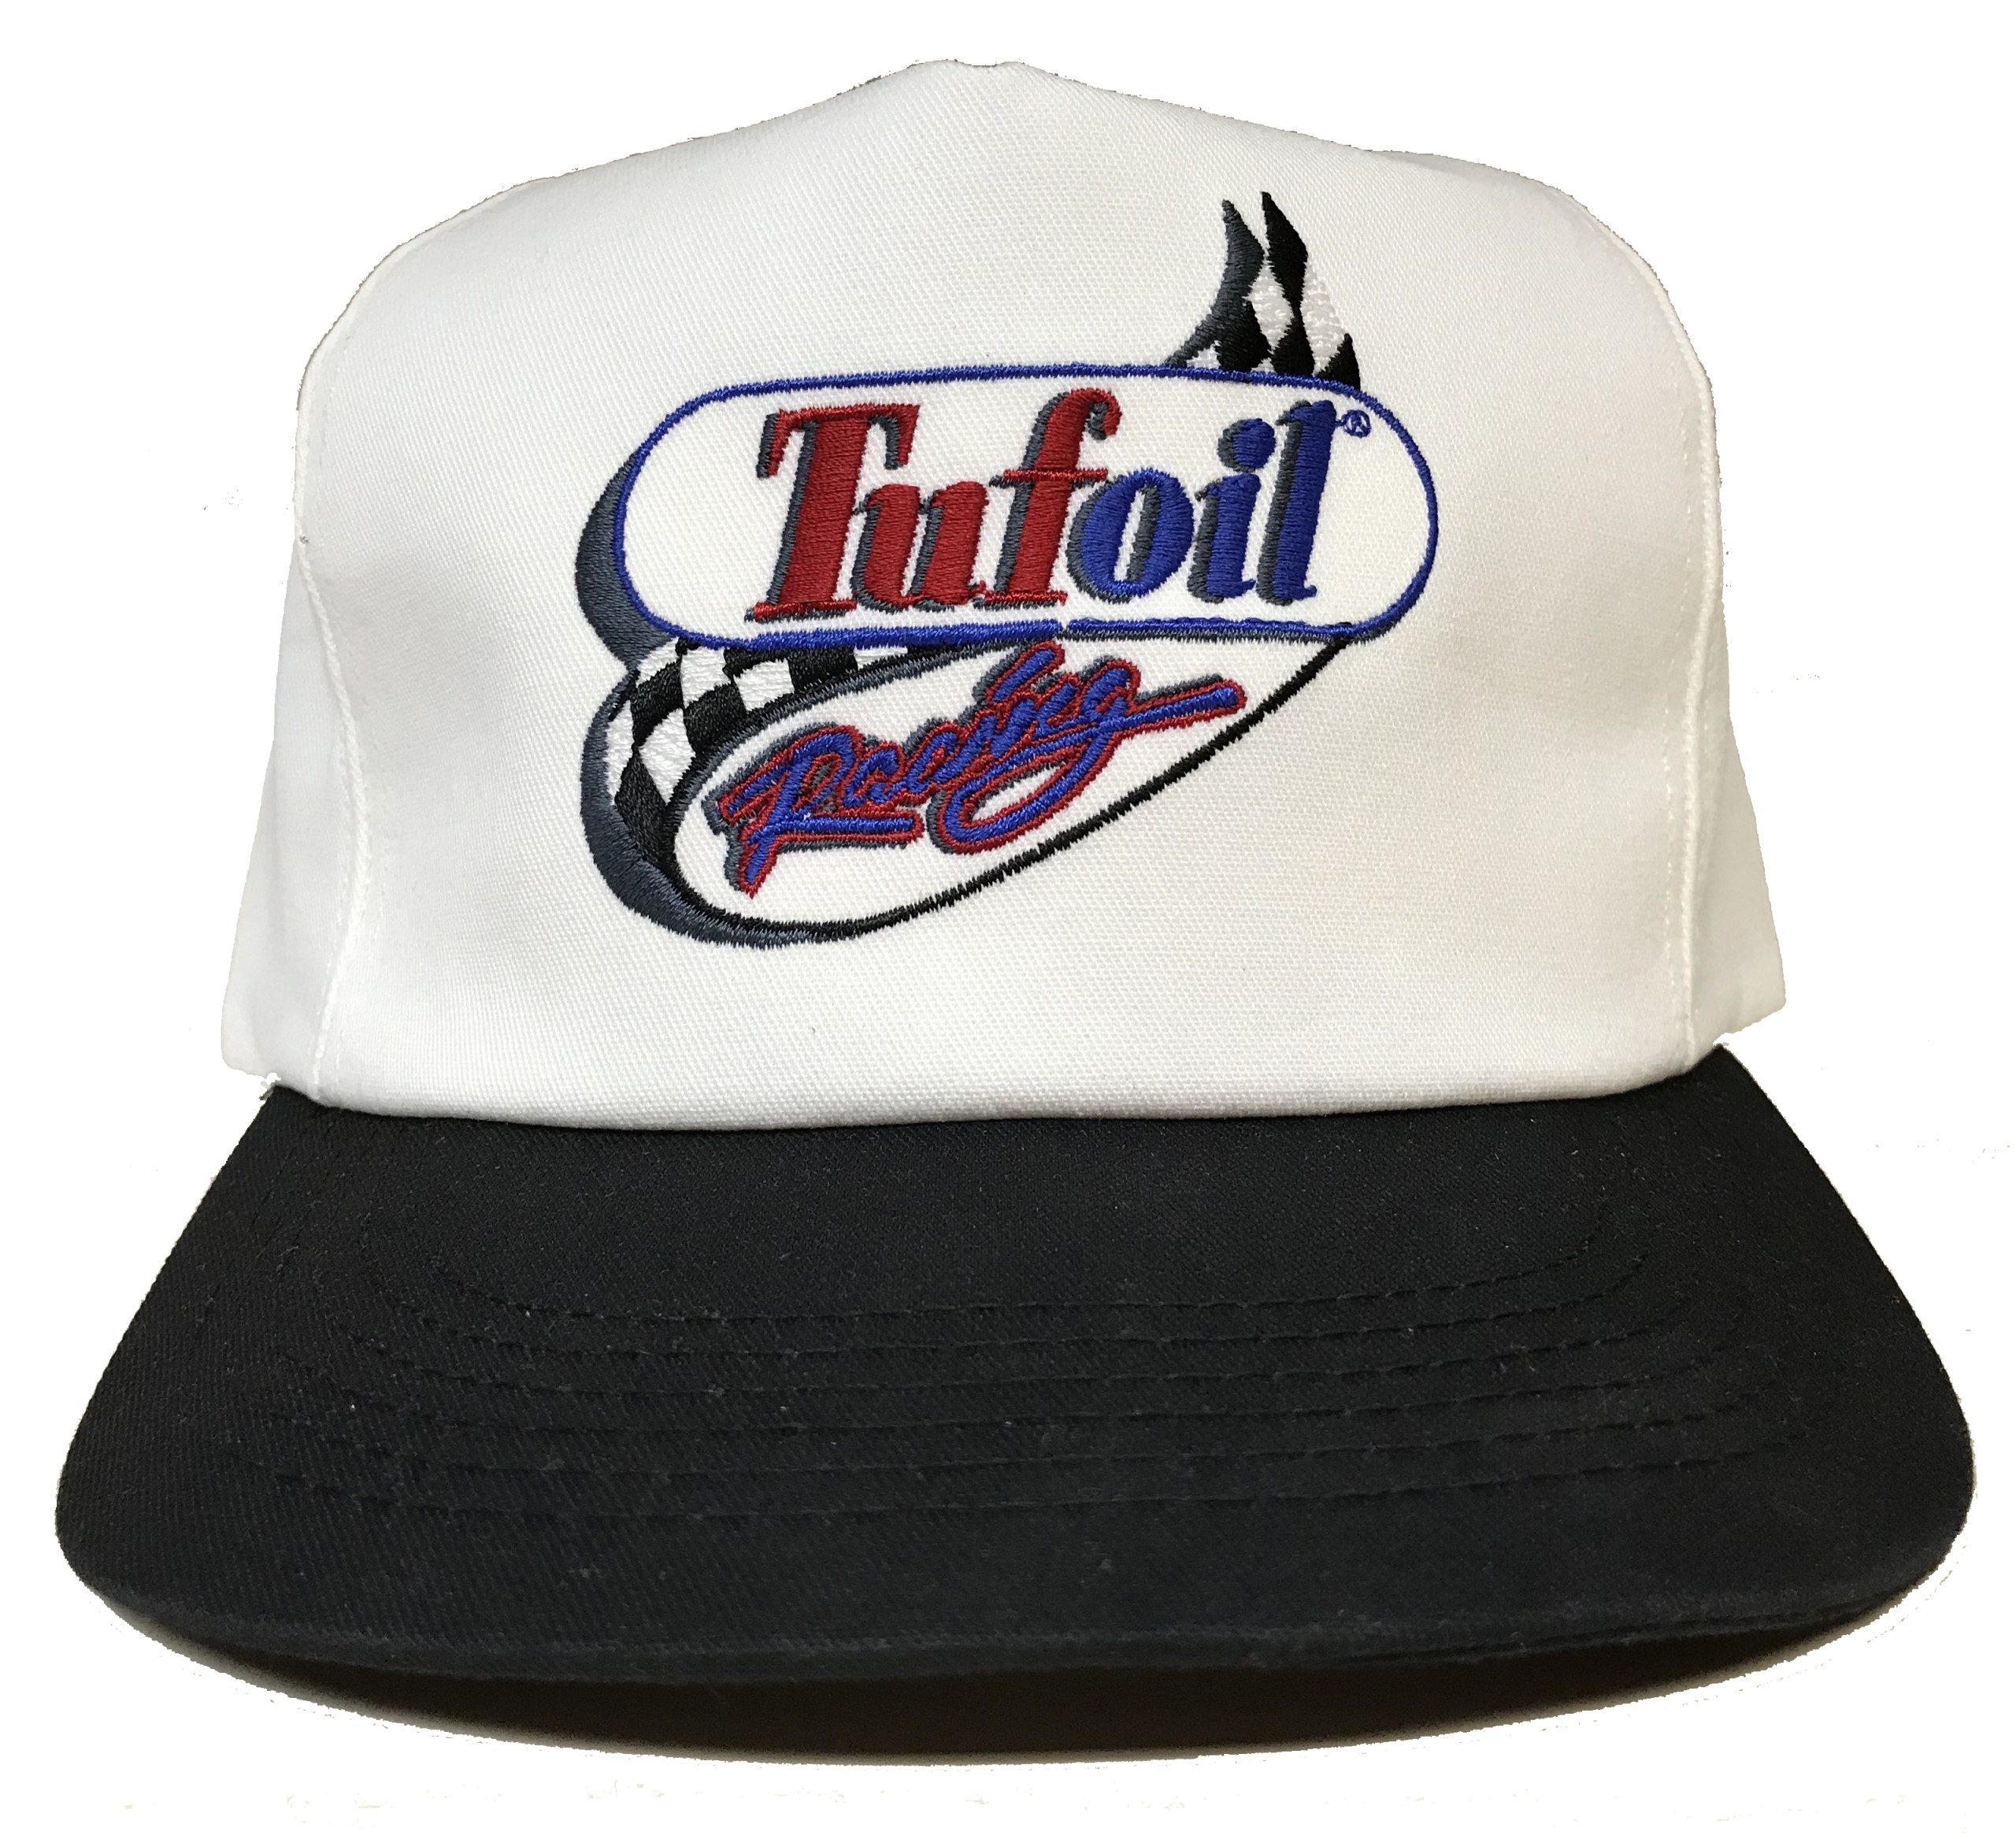 Retro Tufoil Hat